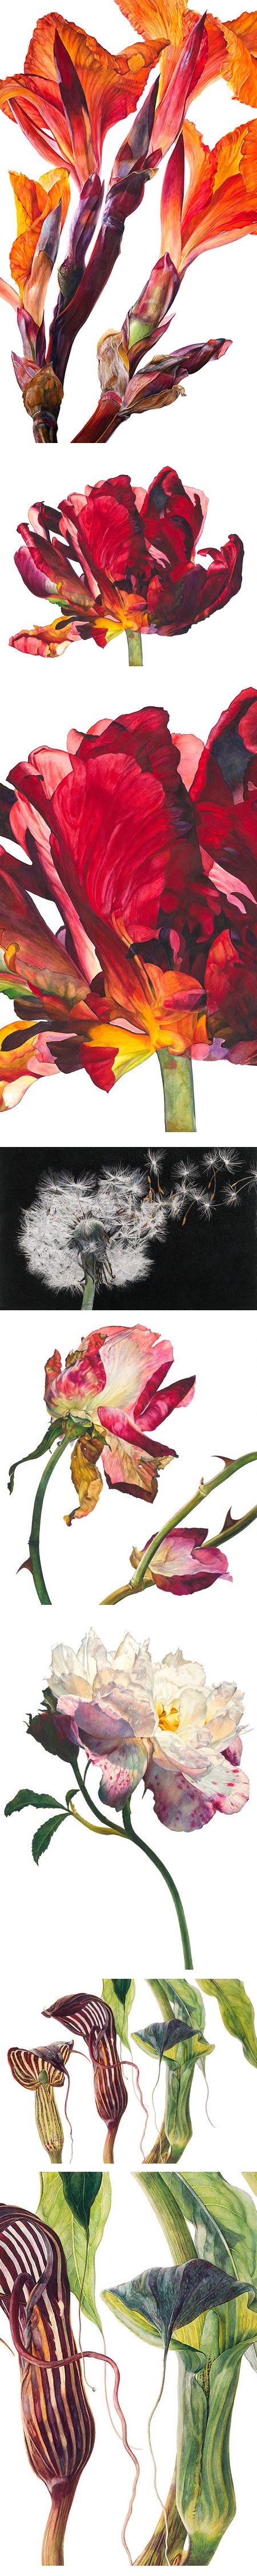 Rosie Sanders, botanical art watercolors